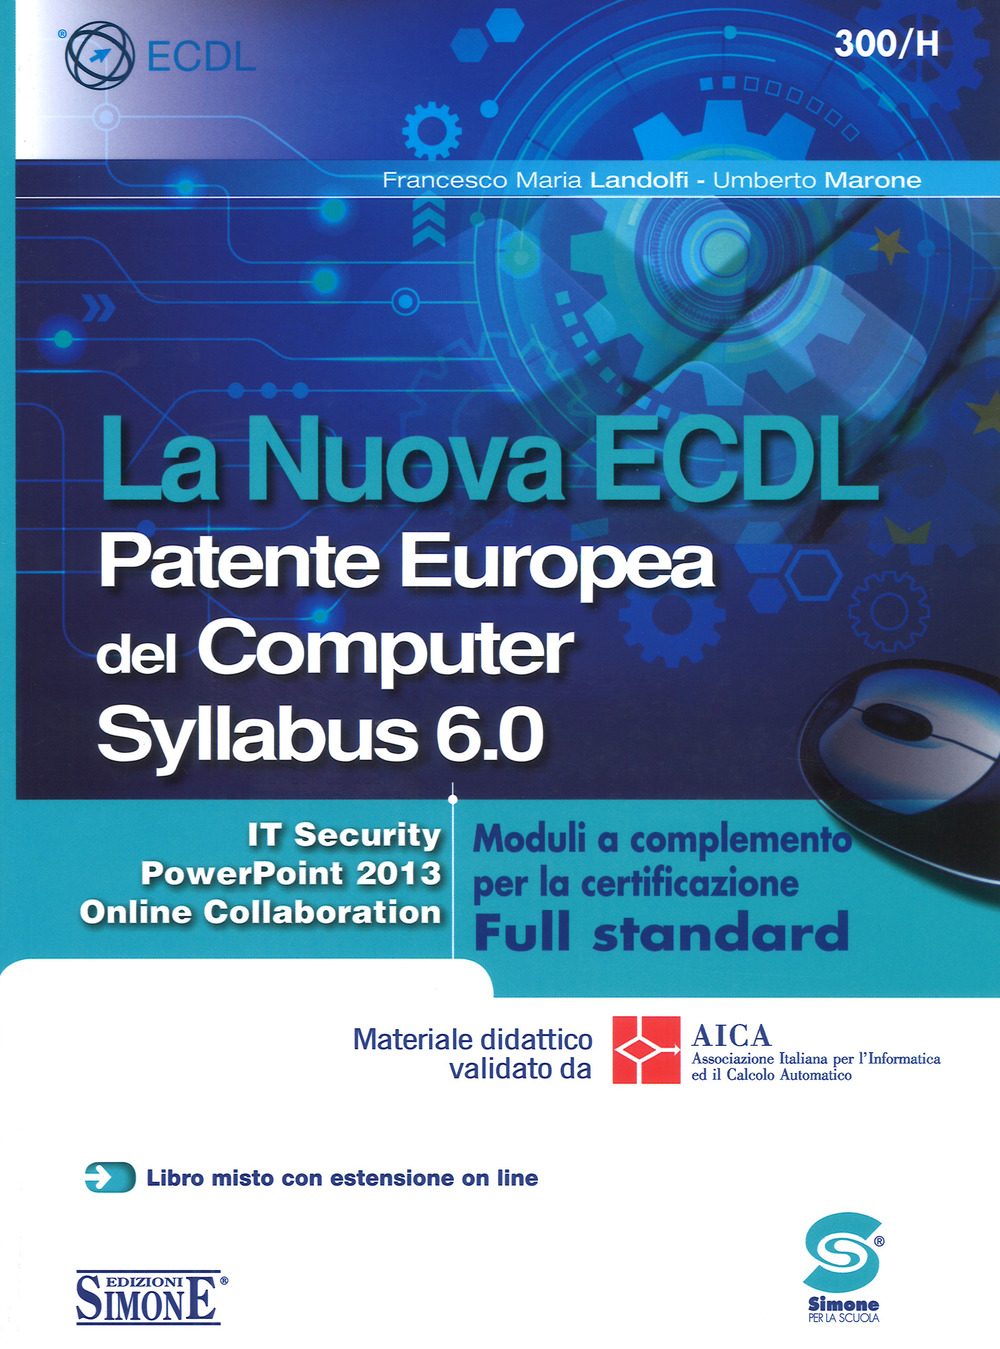 La nuova ECDL Patente Europea del Computer. Syllabus 6.0. Moduli a completamento per la certificazione Full standard